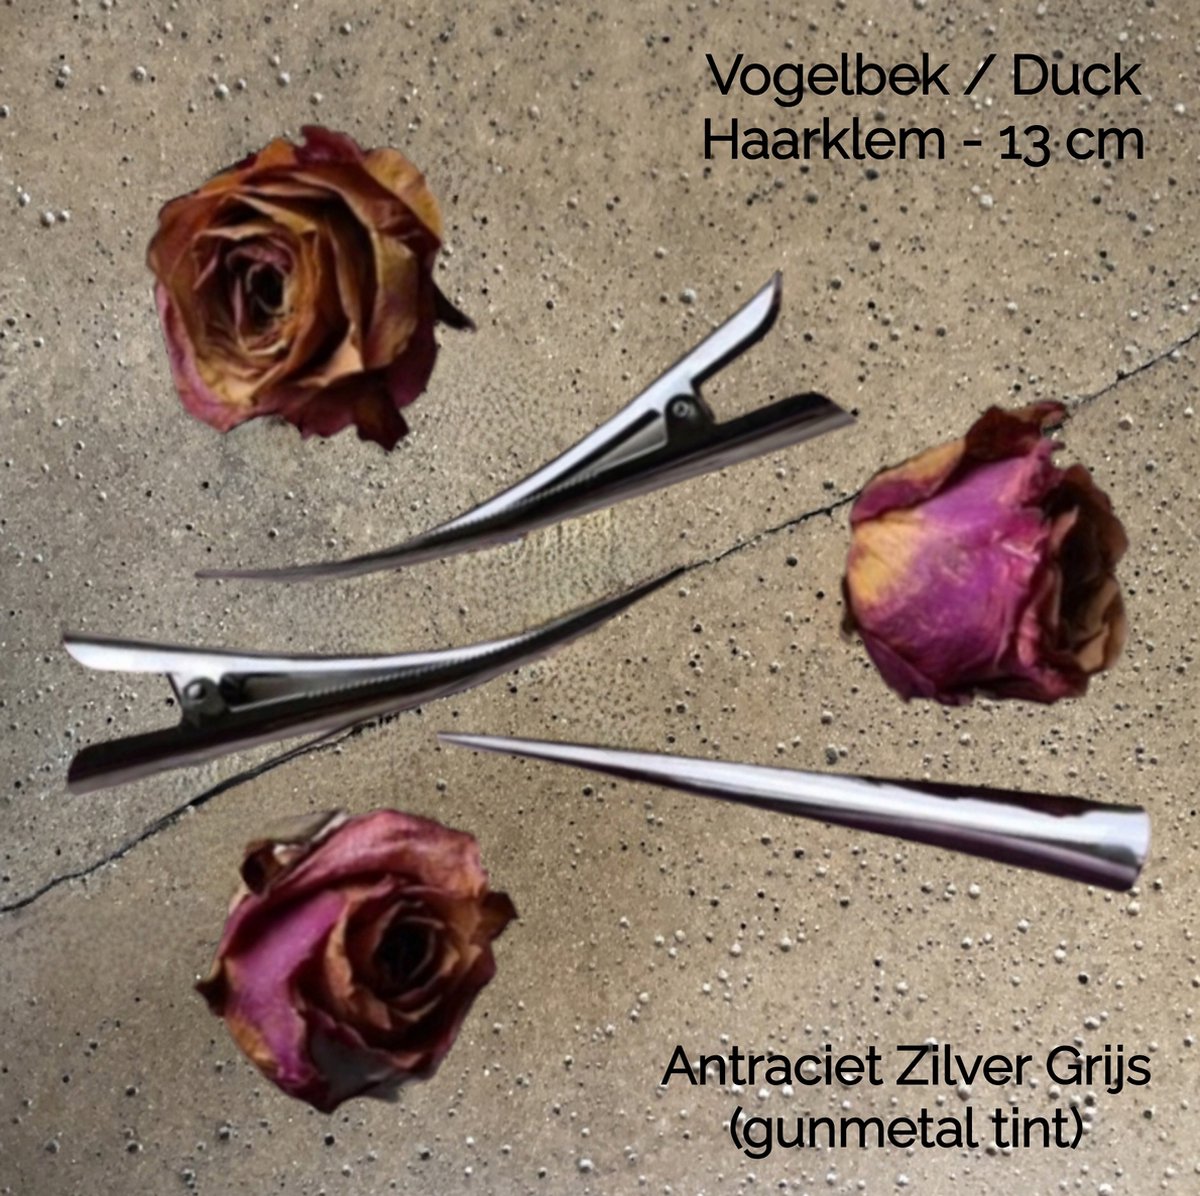 Metalen Duck Haarklem - Antraciet Zilver Grijs / Gunmetal tint - 13 cm - met tandjes - Platbek Vogelbek - volwassenen tieners kinderen - casual feest